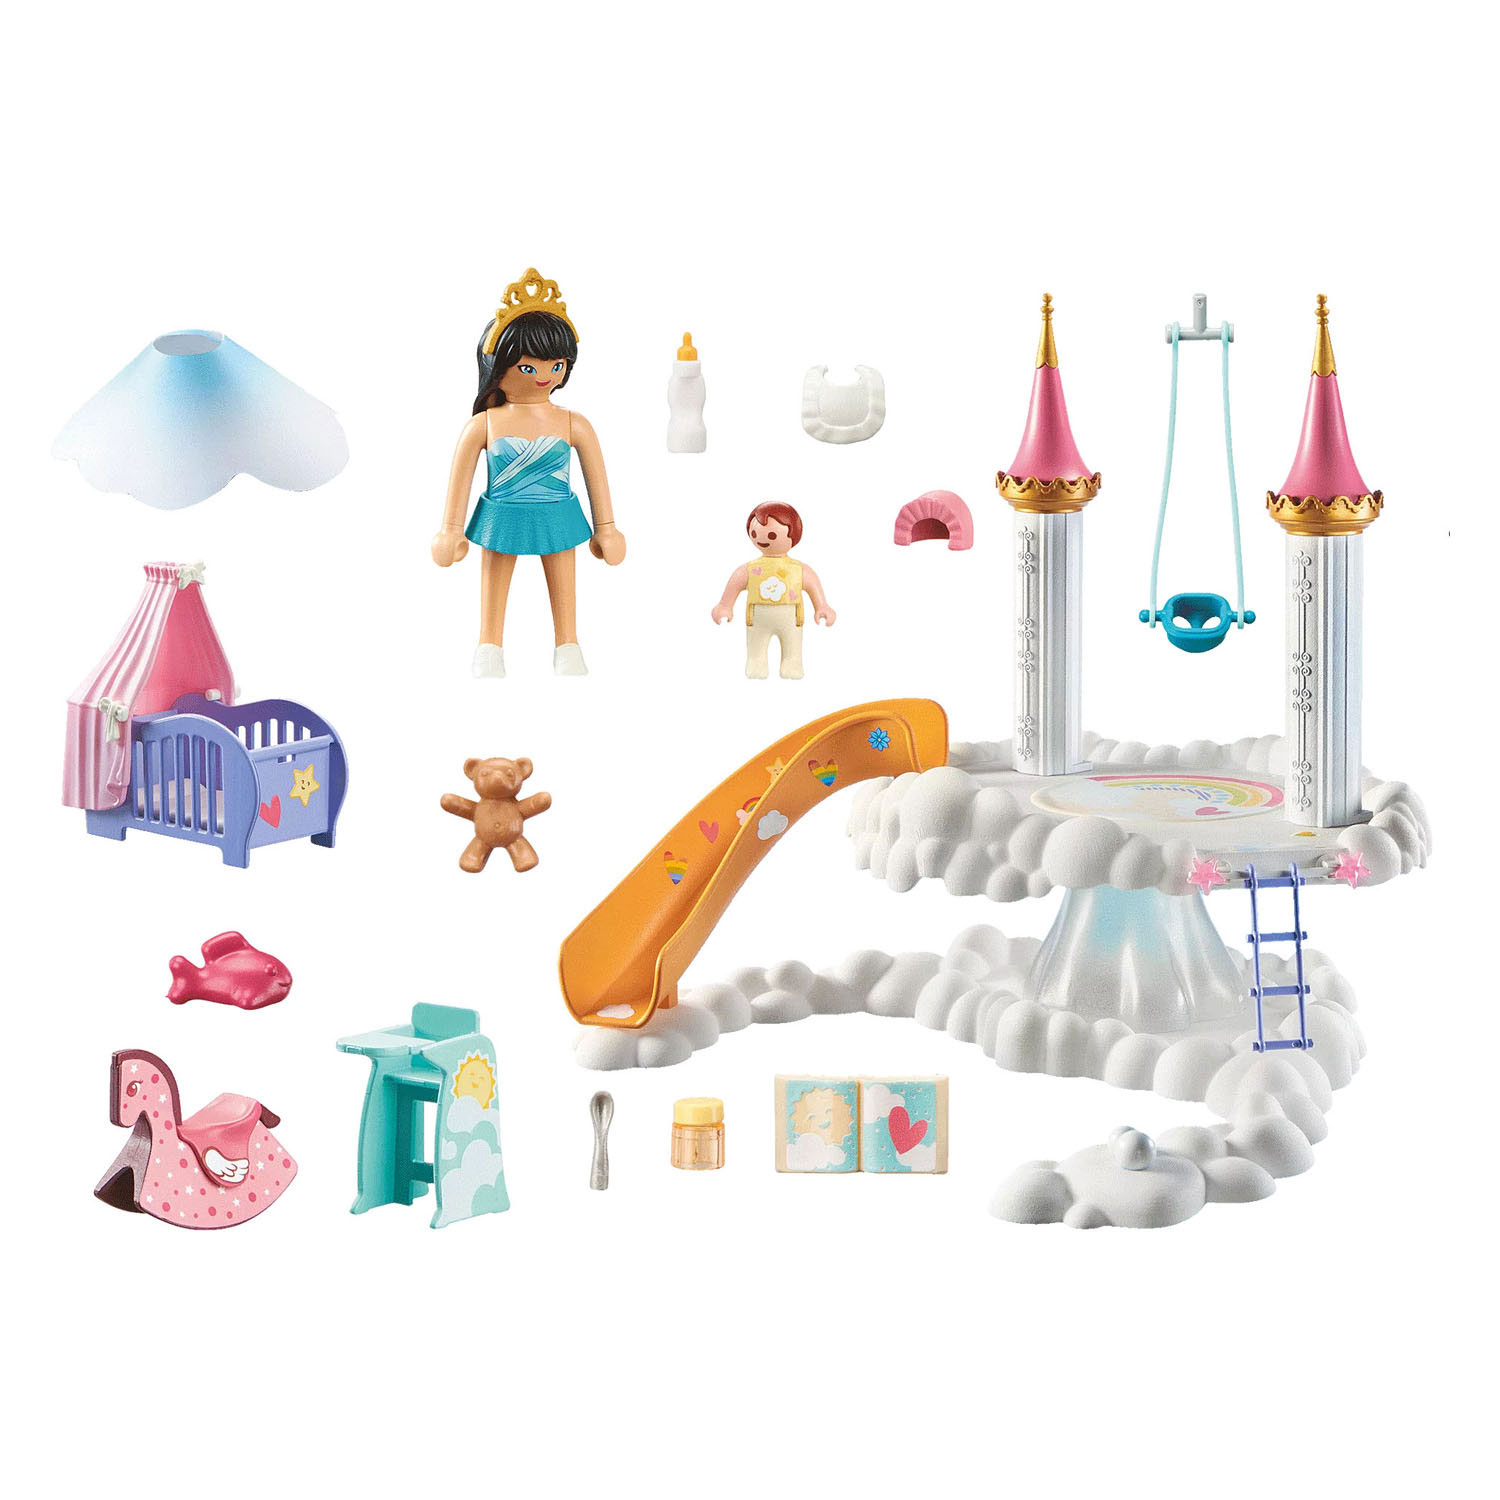 Playmobil Magic and Princess